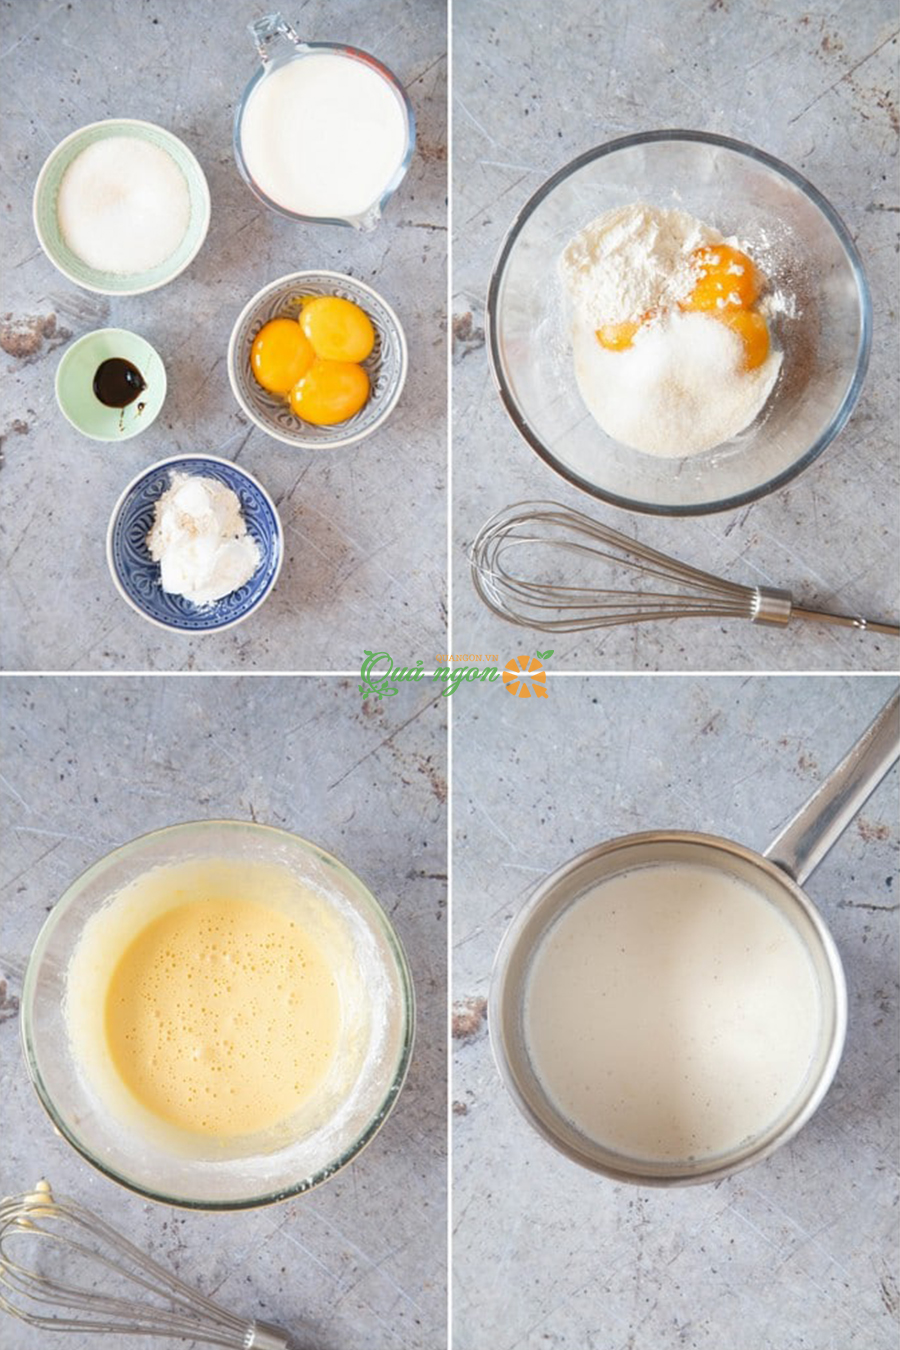 Đánh lòng đỏ trứng, đường và bột bằng máy đánh trứng